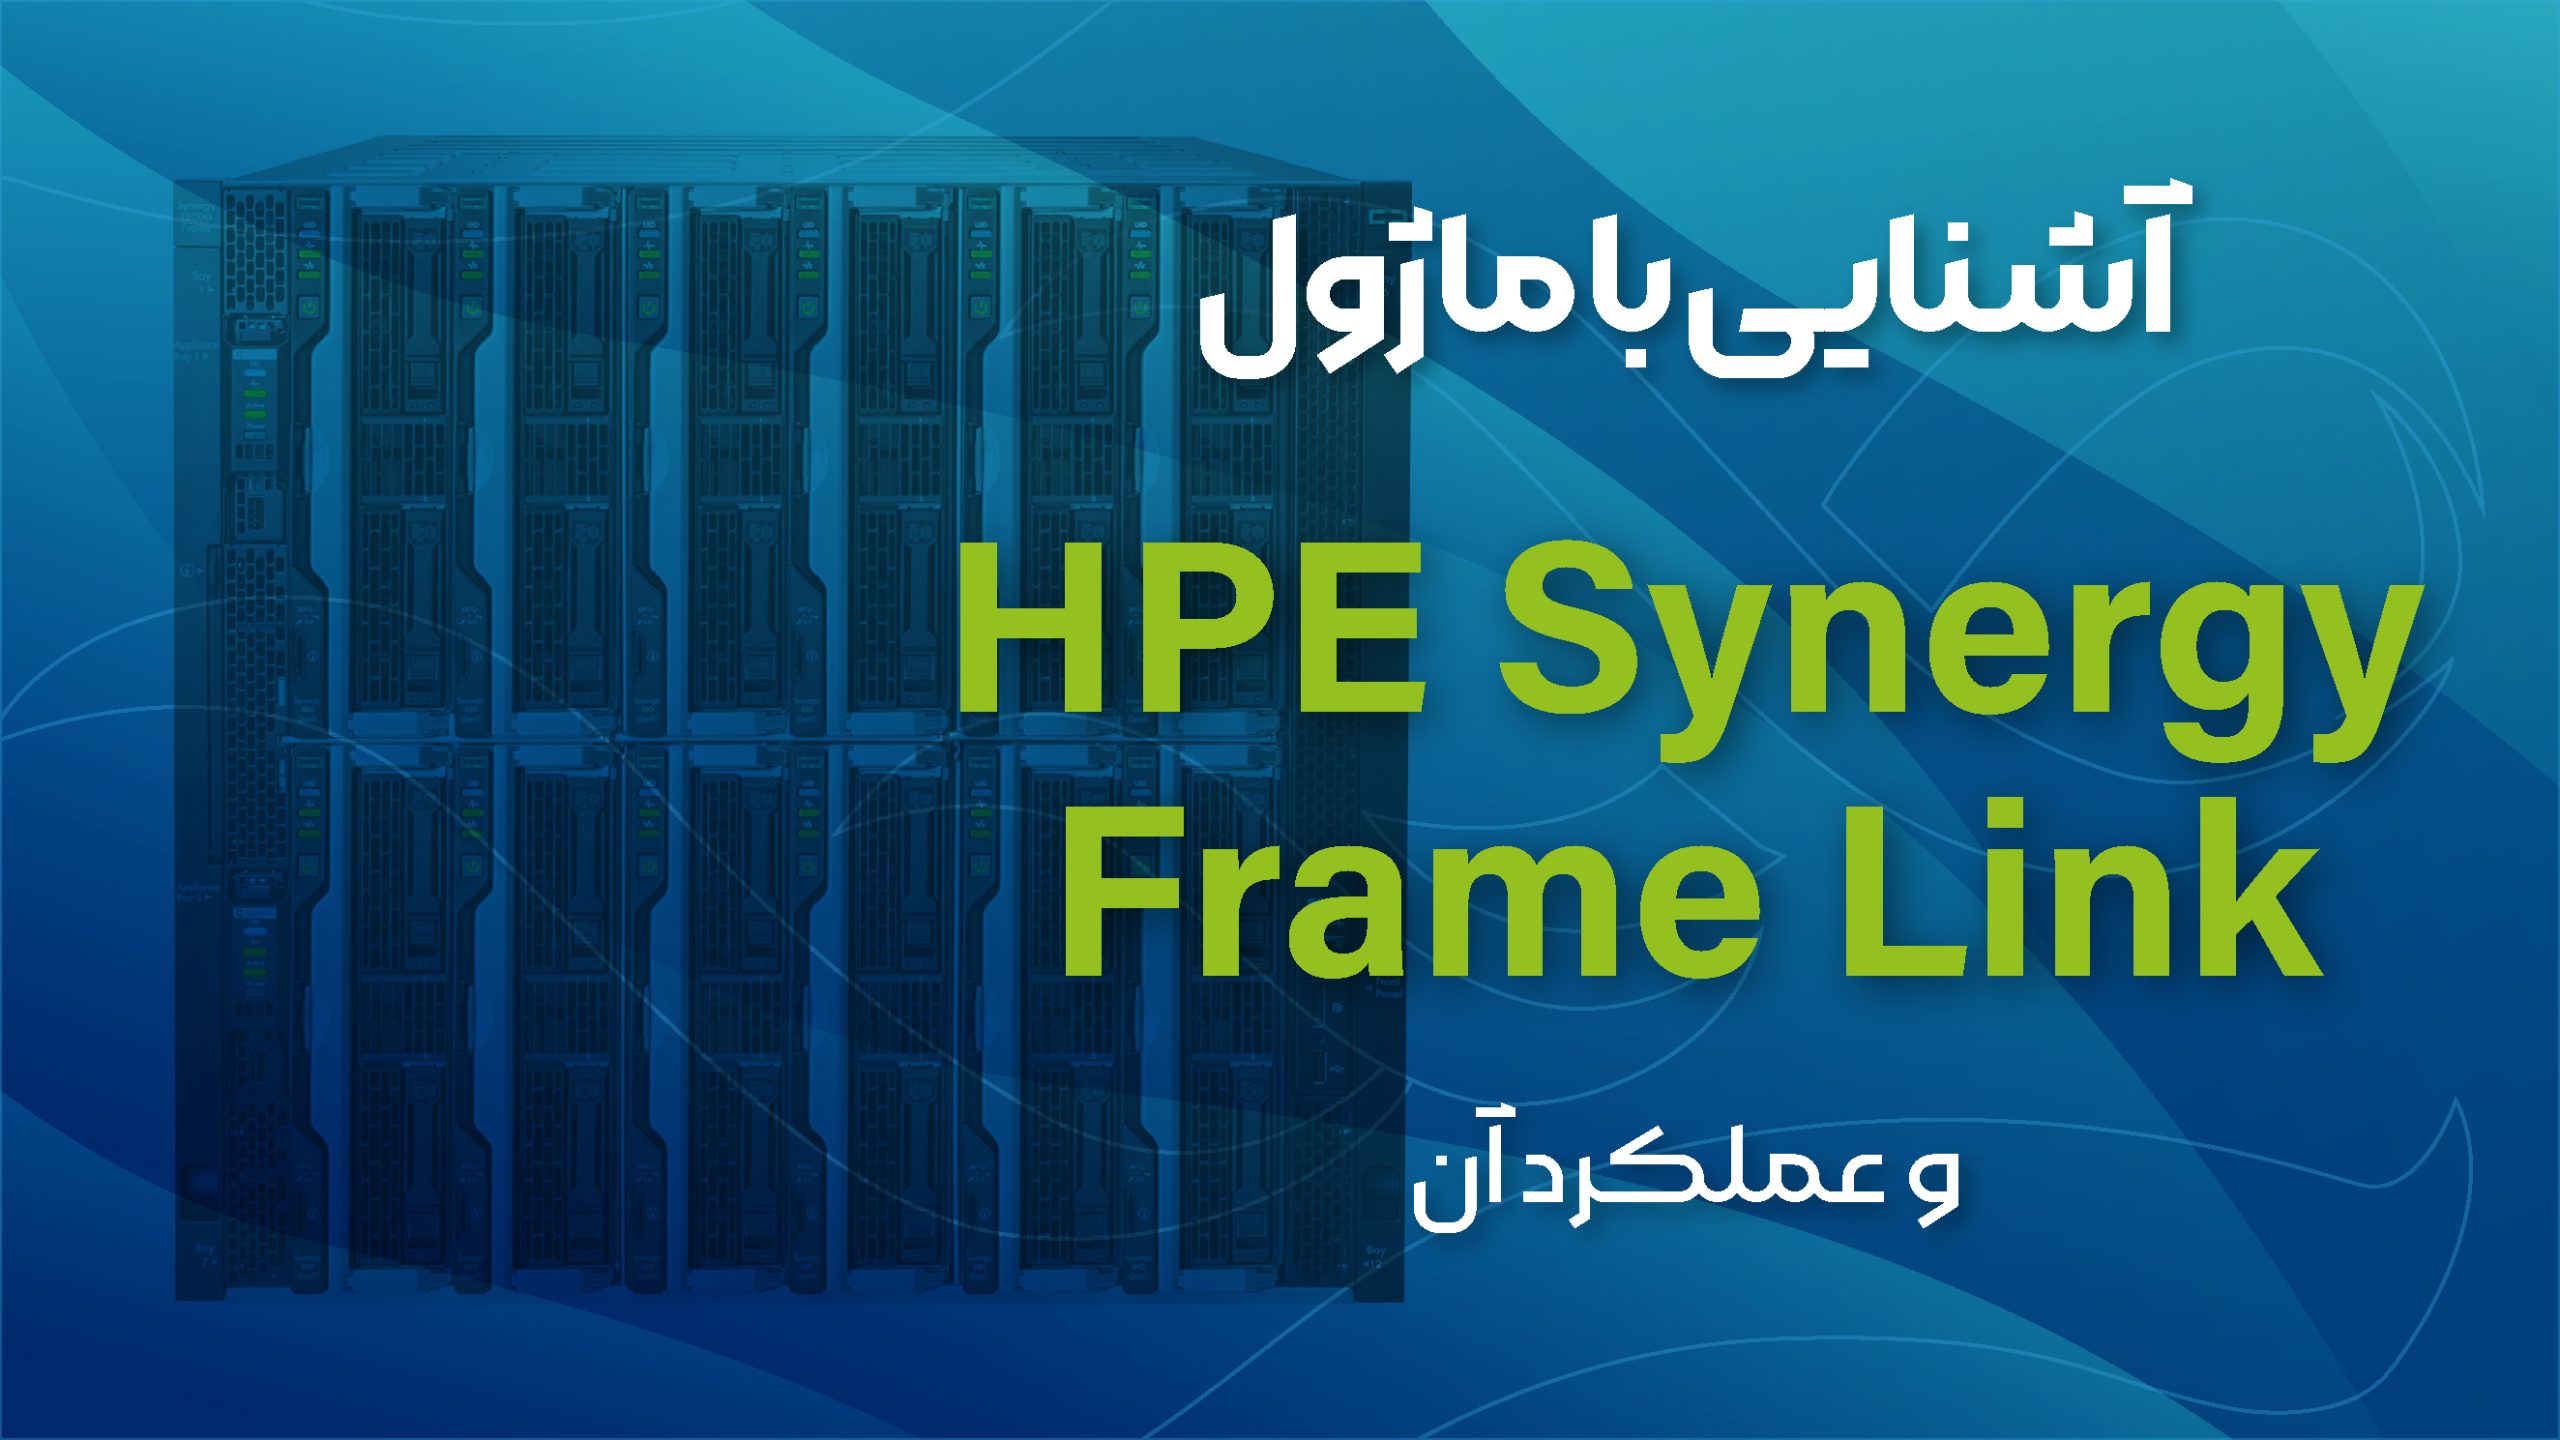 آشنایی با ماژول HPE Synergy Frame Link و عملکرد آن